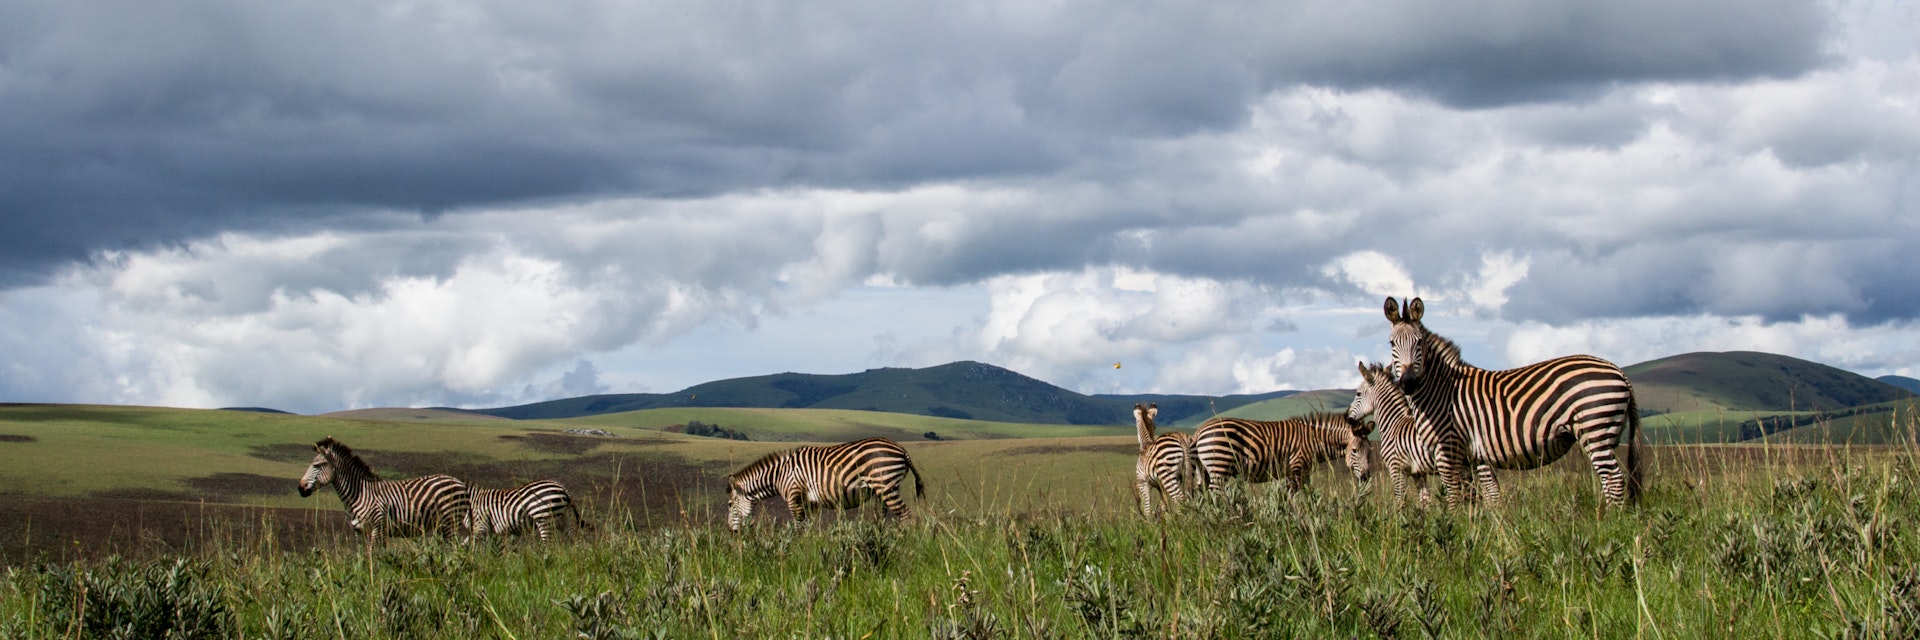 Zebra's in Nyika national park, Malawi